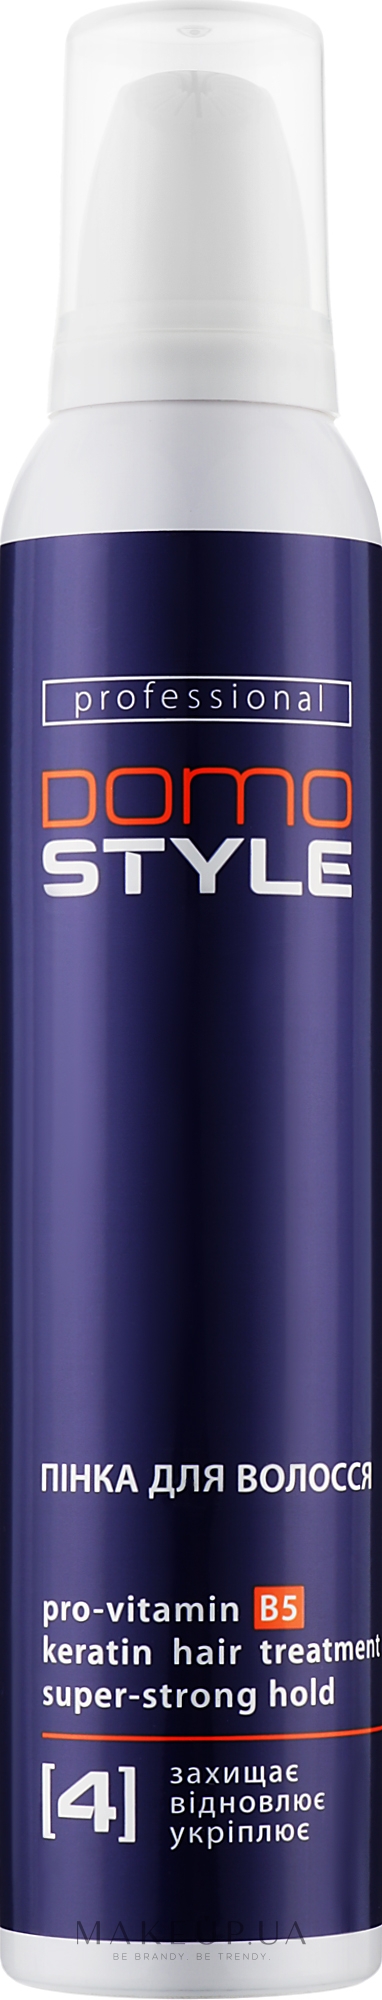 Пенка для волос, сверхсильная фиксация (4) - Domo Style — фото 200ml